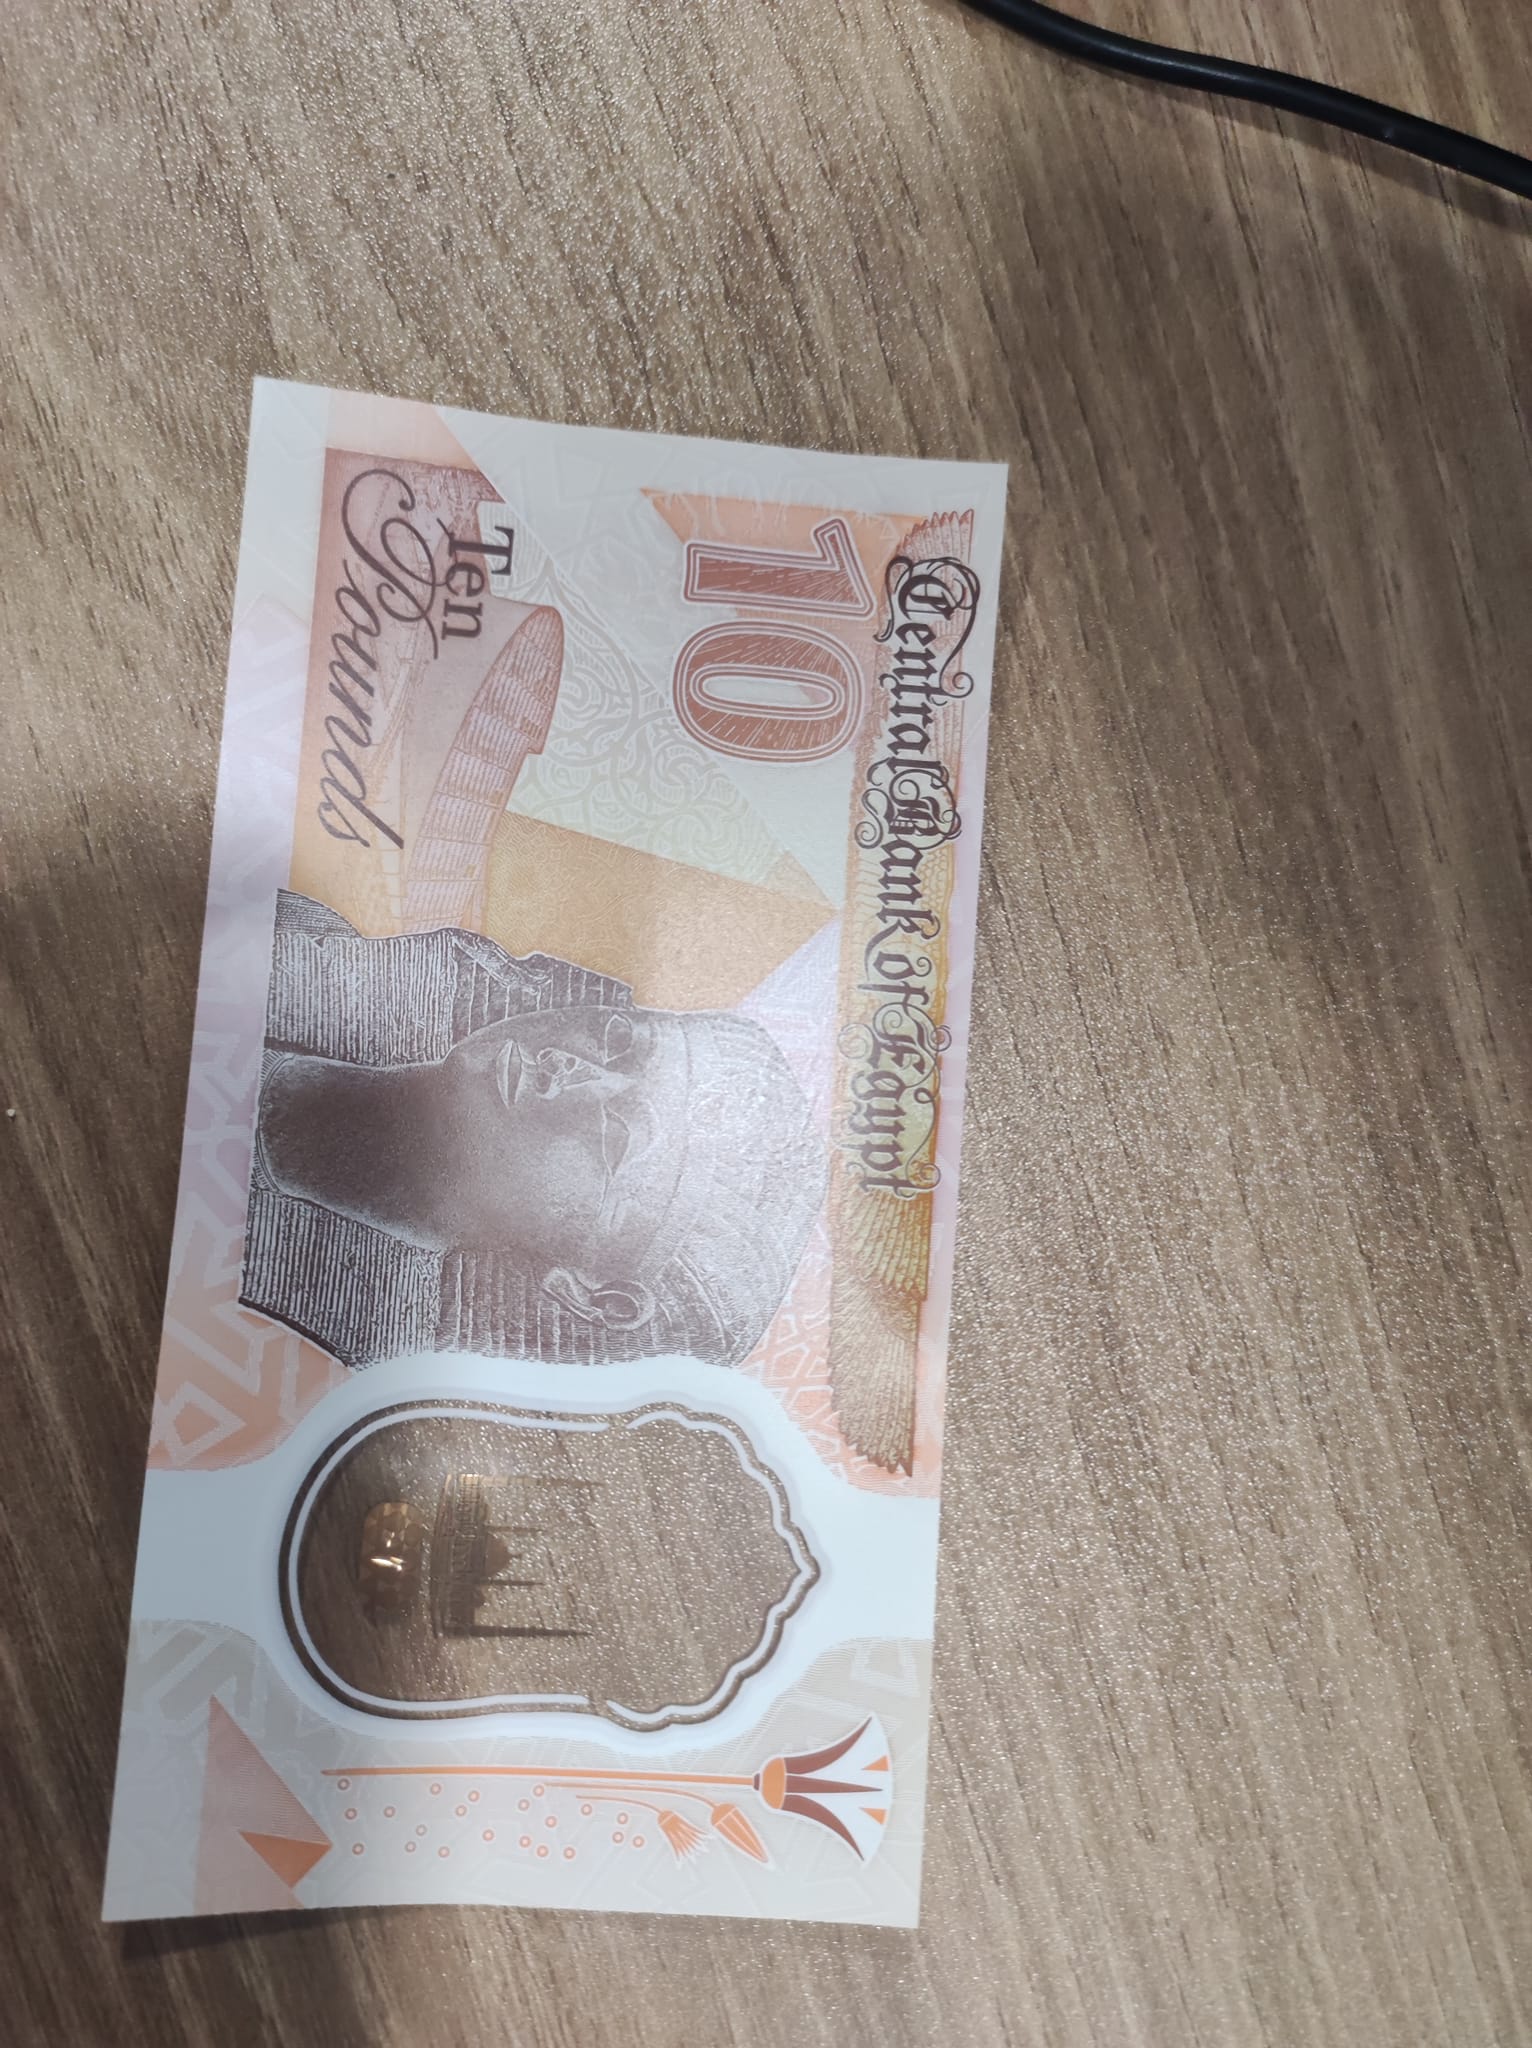 صورة الملكة حتشبسوت على العملة الجديدة